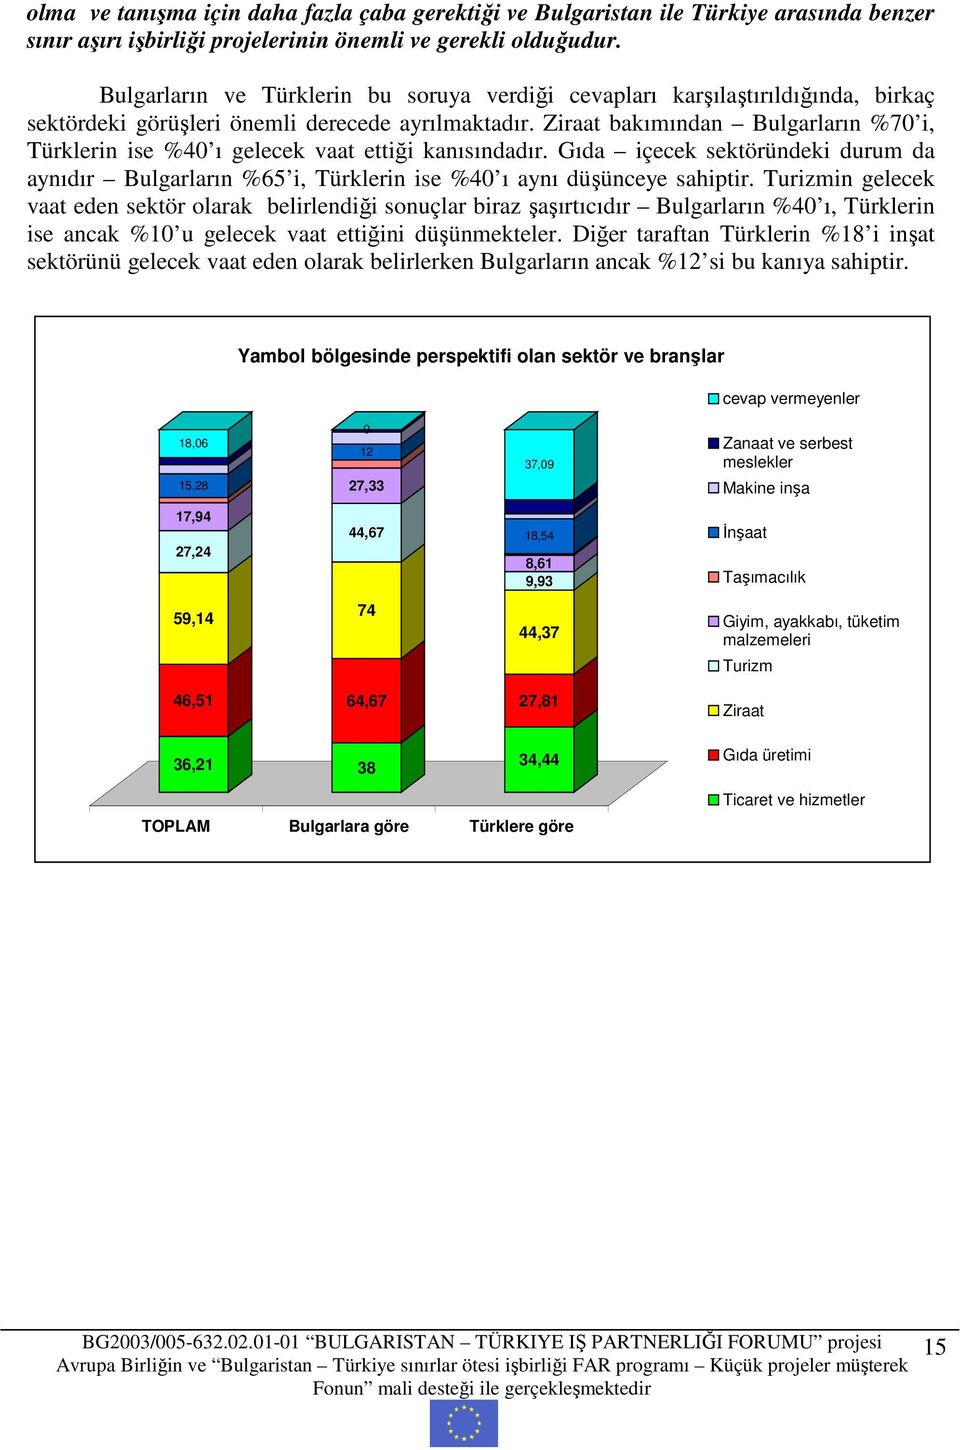 Ziraat bakımından Bulgarların %70 i, Türklerin ise %40 ı gelecek vaat ettiği kanısındadır. Gıda içecek sektöründeki durum da aynıdır Bulgarların %65 i, Türklerin ise %40 ı aynı düşünceye sahiptir.